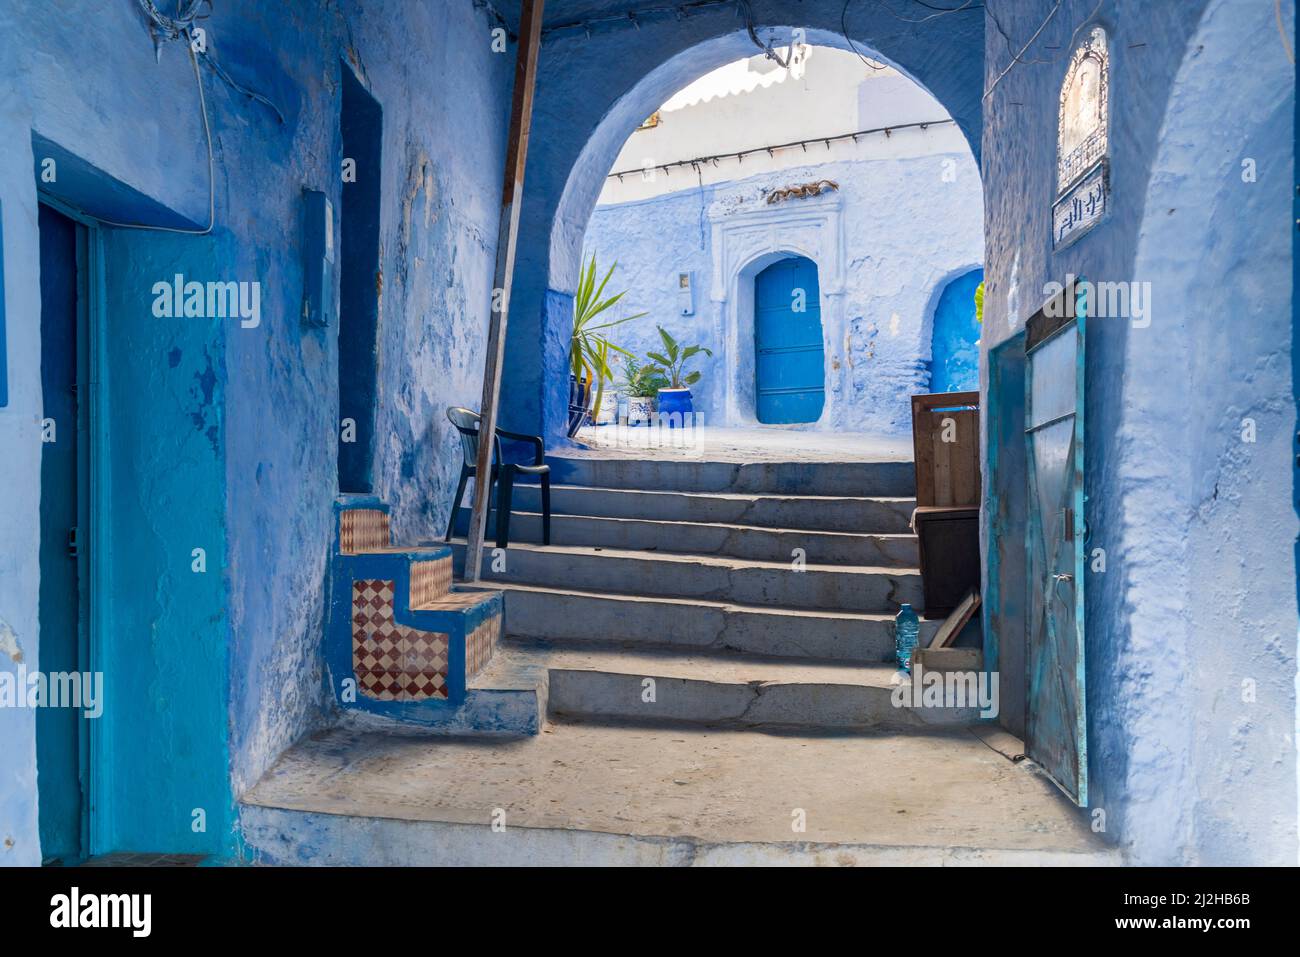 Maroc, Chefchaouen, marches étroites et maisons bleues traditionnelles Banque D'Images